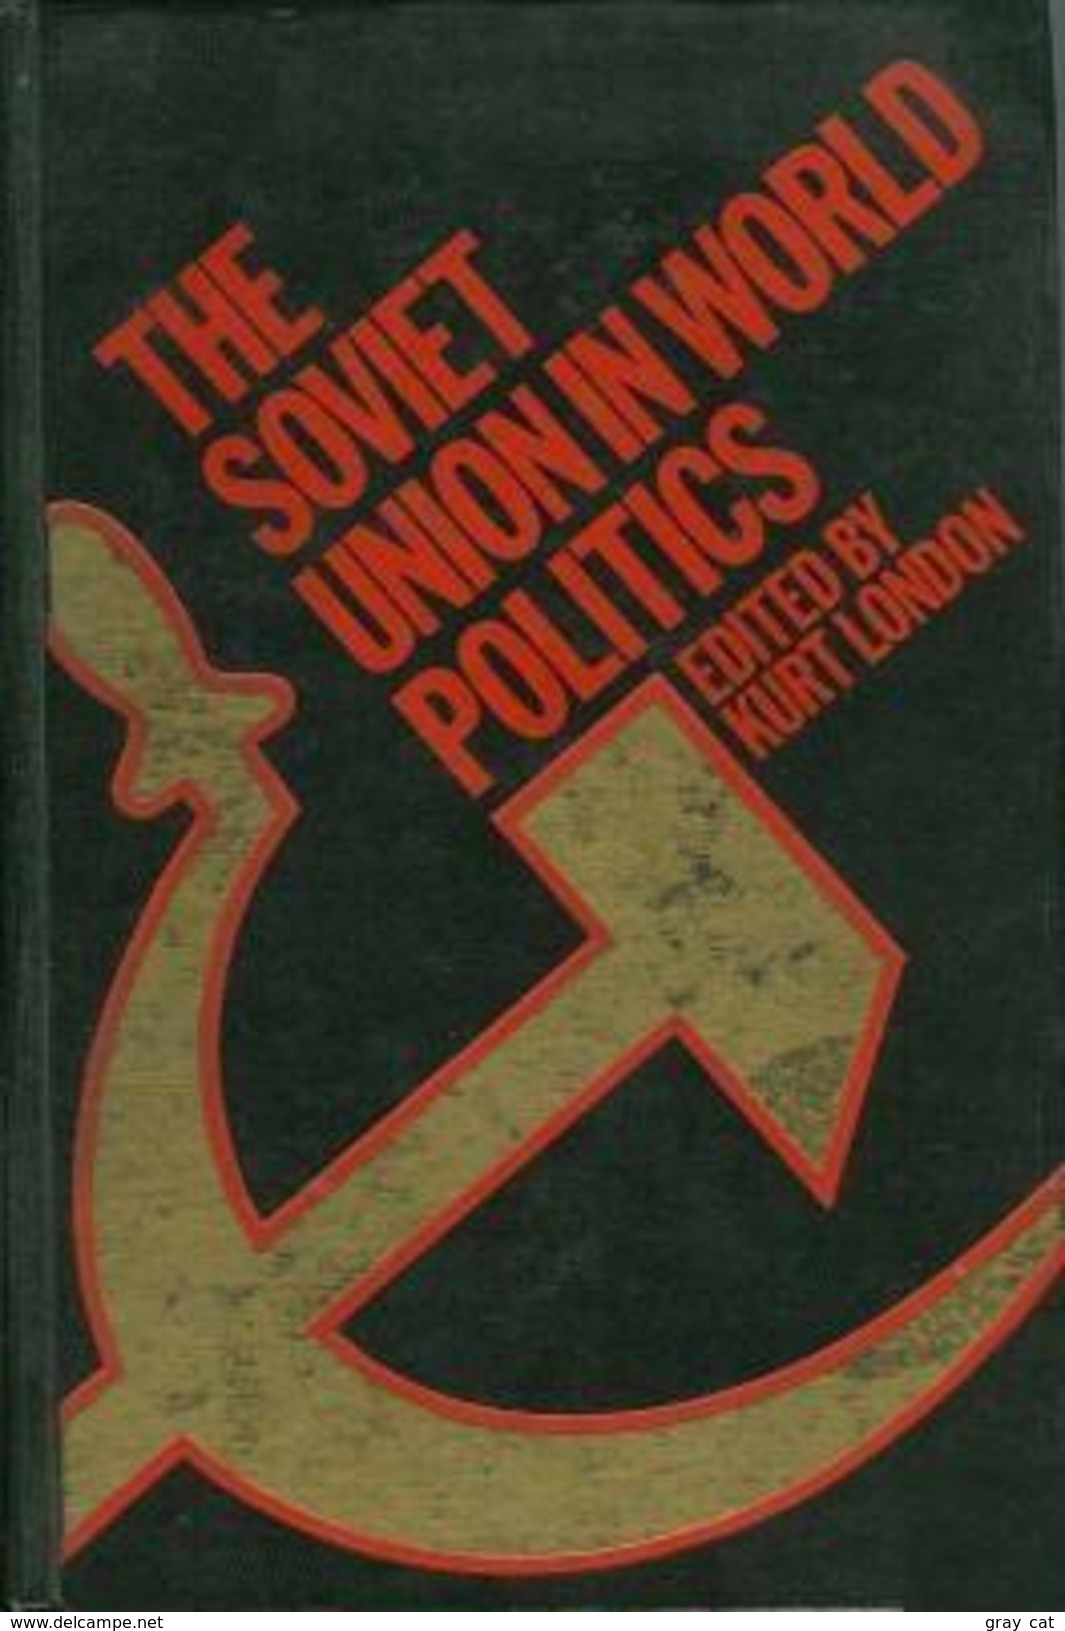 The Soviet Union In World Politics By Kurt London (ISBN 9780891582632) - Europa